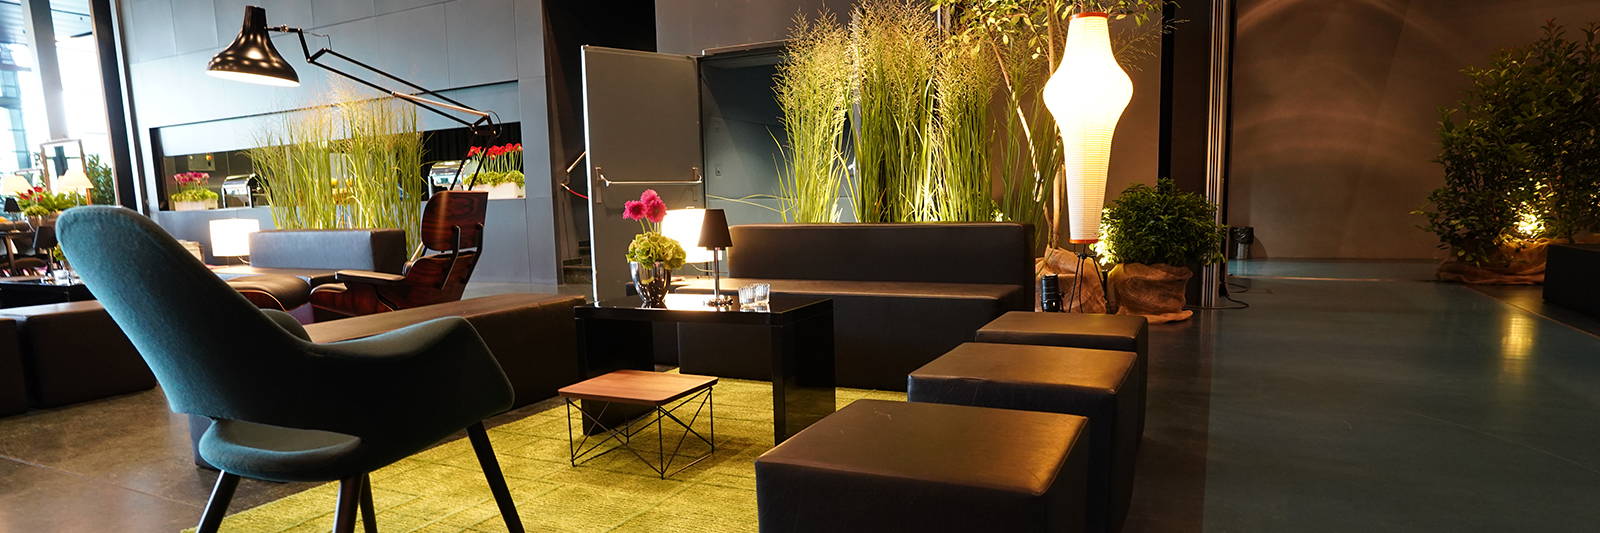 Event Lounge Beistelltisch mieten für Sofa und Sitzwürfel